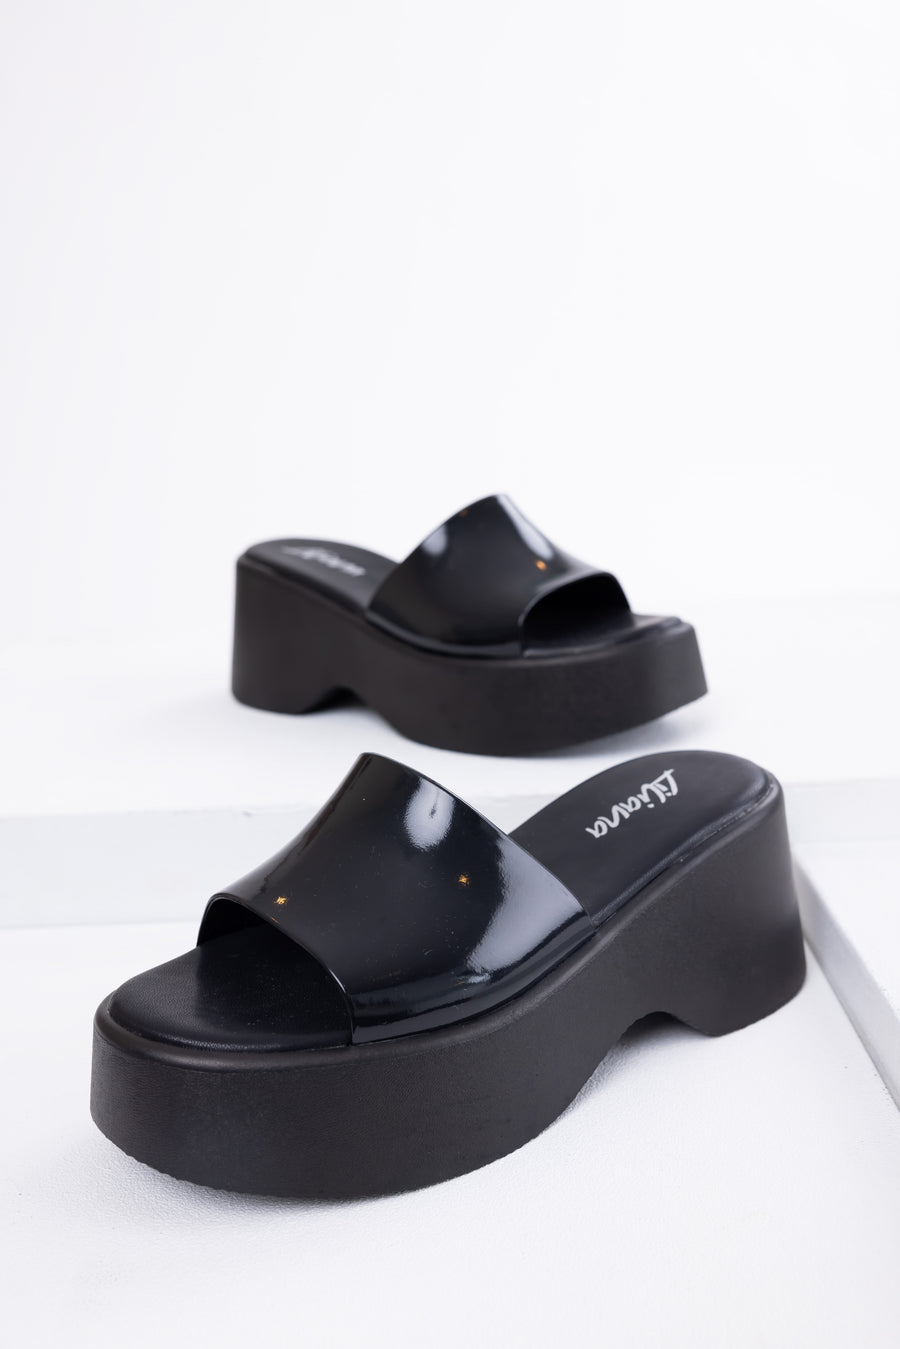 Black Single Band Platform Wedge Sandals